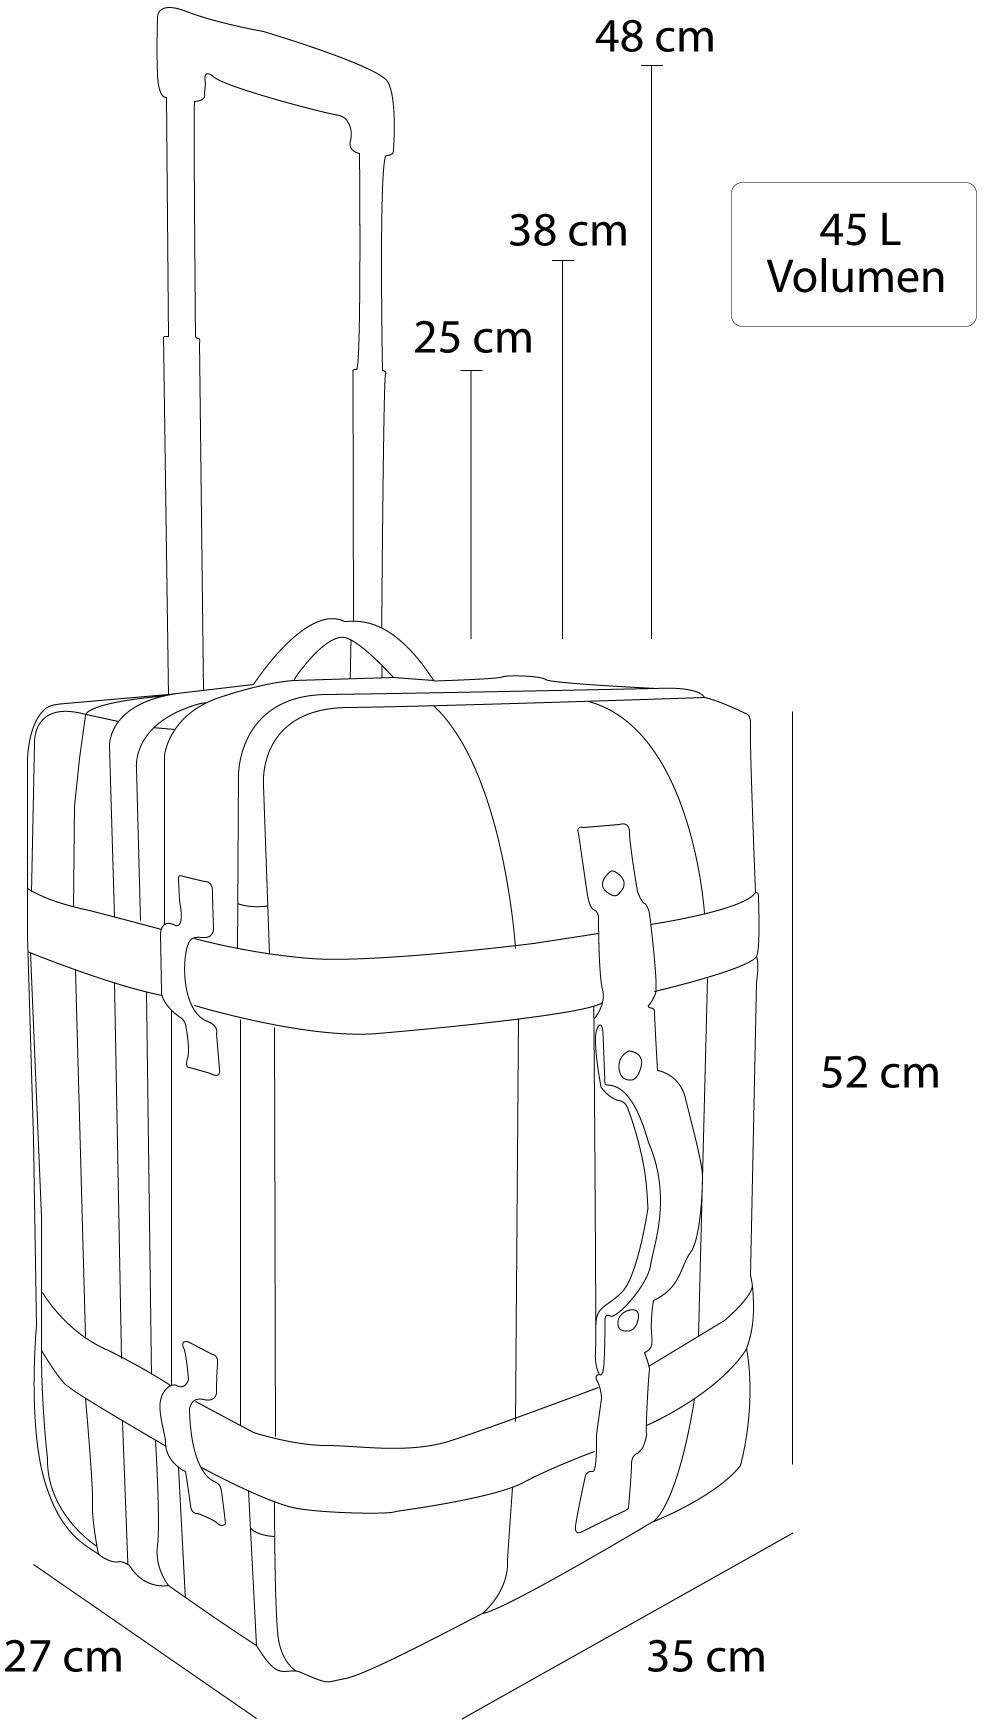 normani Reisetasche Reisetasche Dunkelgrau/Grau mit Fächeraufteilung clevere Trolley mit 45, Aurori Handgepäckmaß